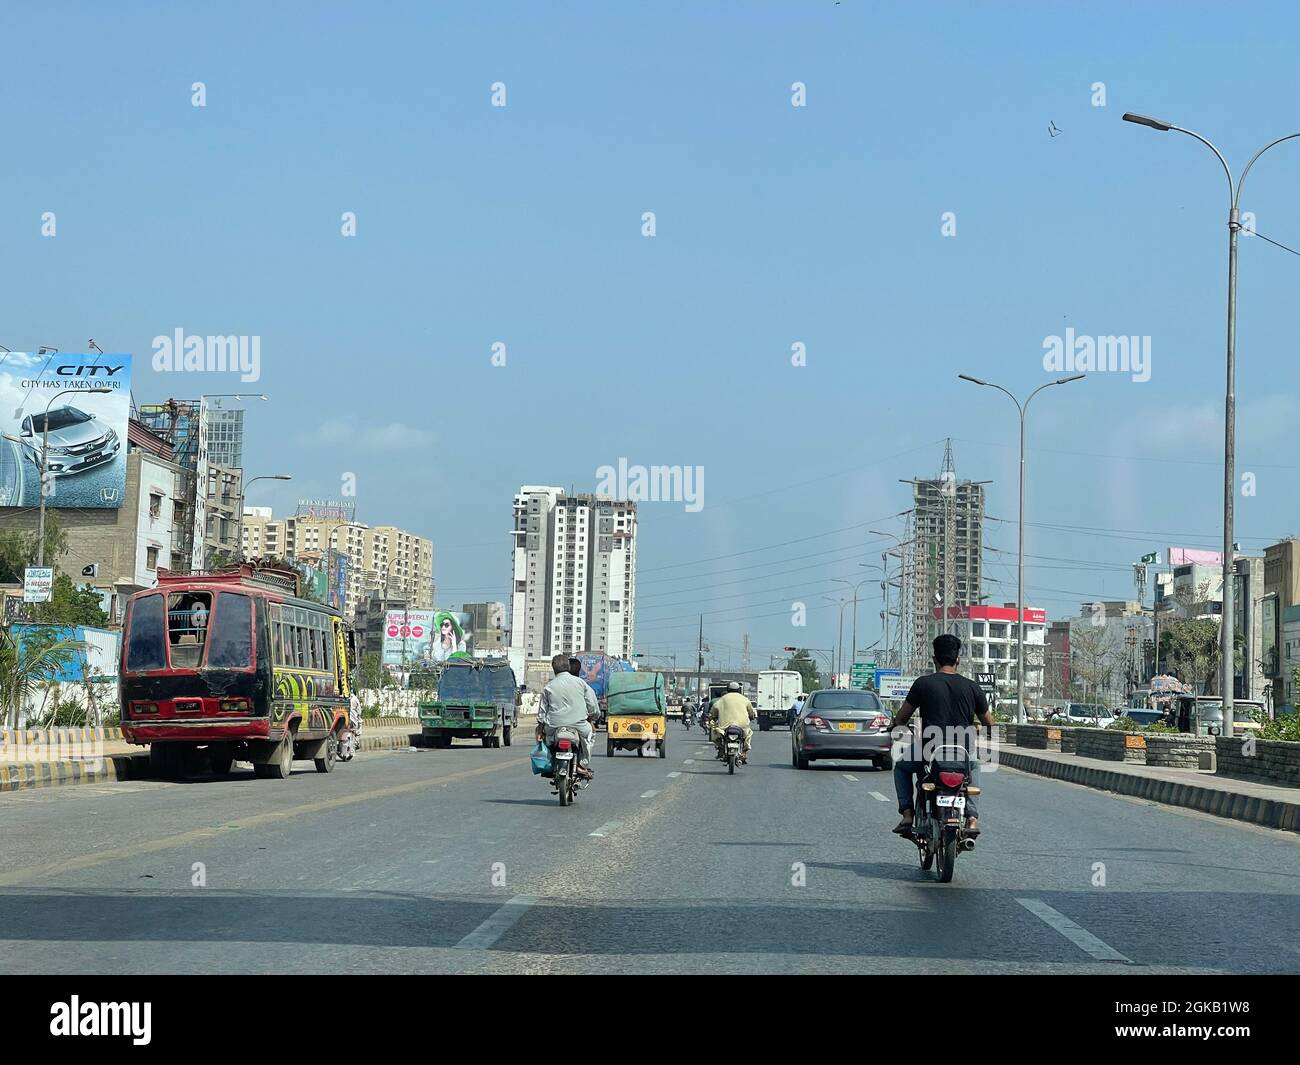 Route principale de Landhi Korangi. Trafic de la ville de Karachi aux heures de travail, circulation en soirée Banque D'Images